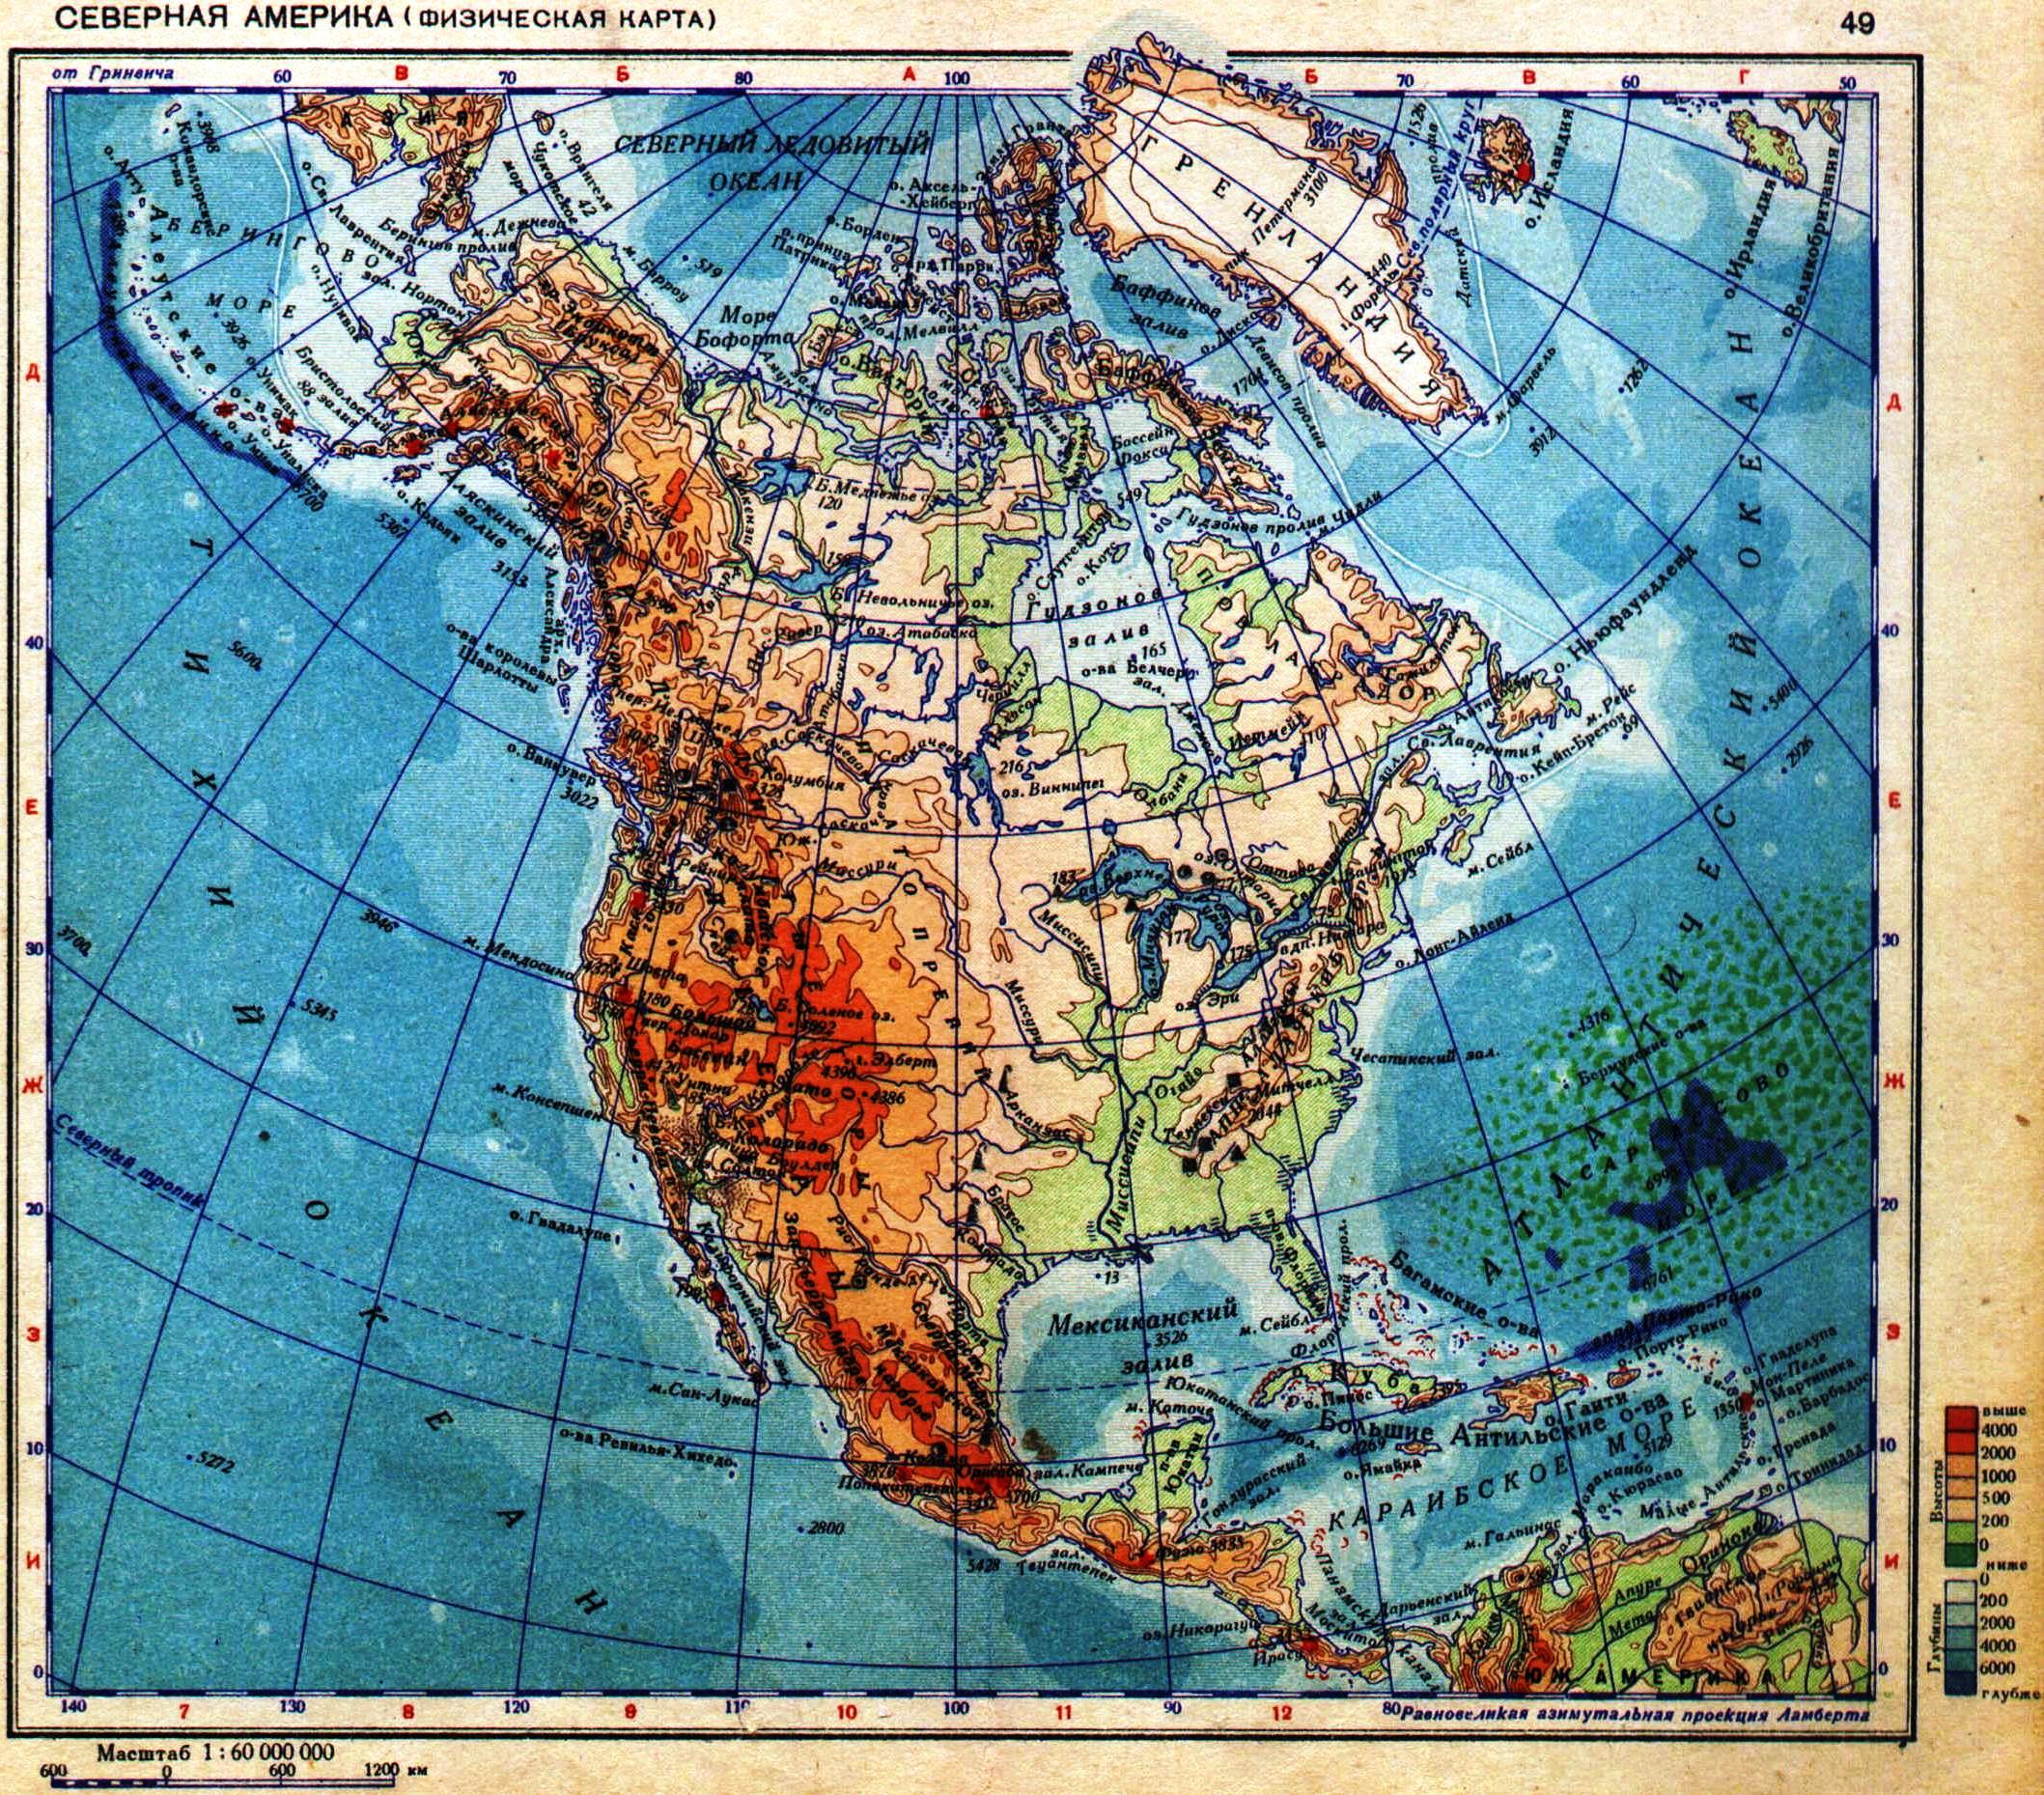 Северная америка географическая карта на русском. Карта Северной Америки географическая. Северная Америка на карте физическая карта. Карта Северной Америки географическая крупная. География физическая карта Северной Америки.